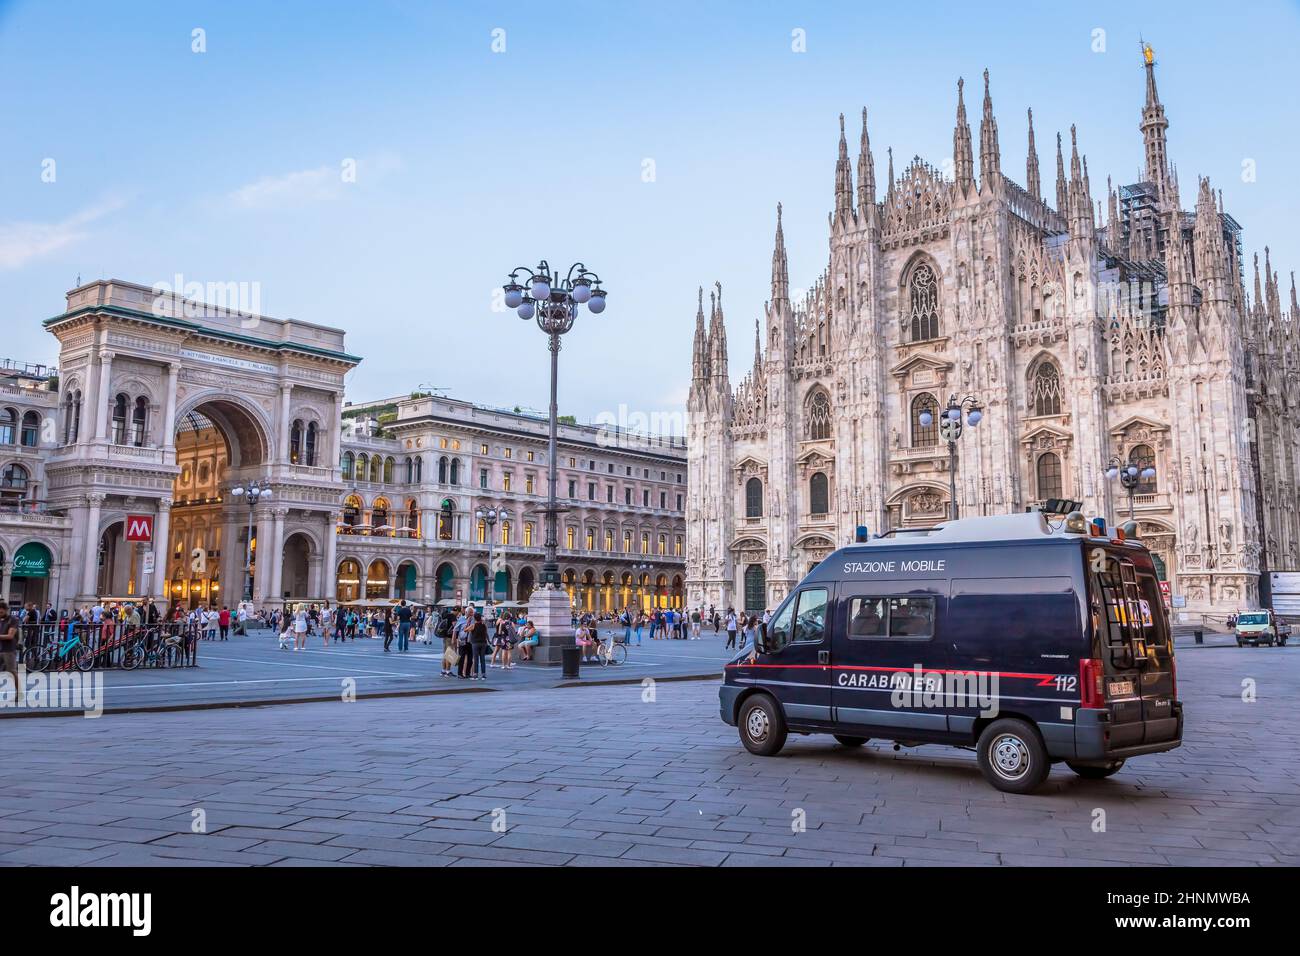 Car carabinier, également appelé Carabinieri, patrouiller dans la ville de Milan et prévenir la criminalité Banque D'Images